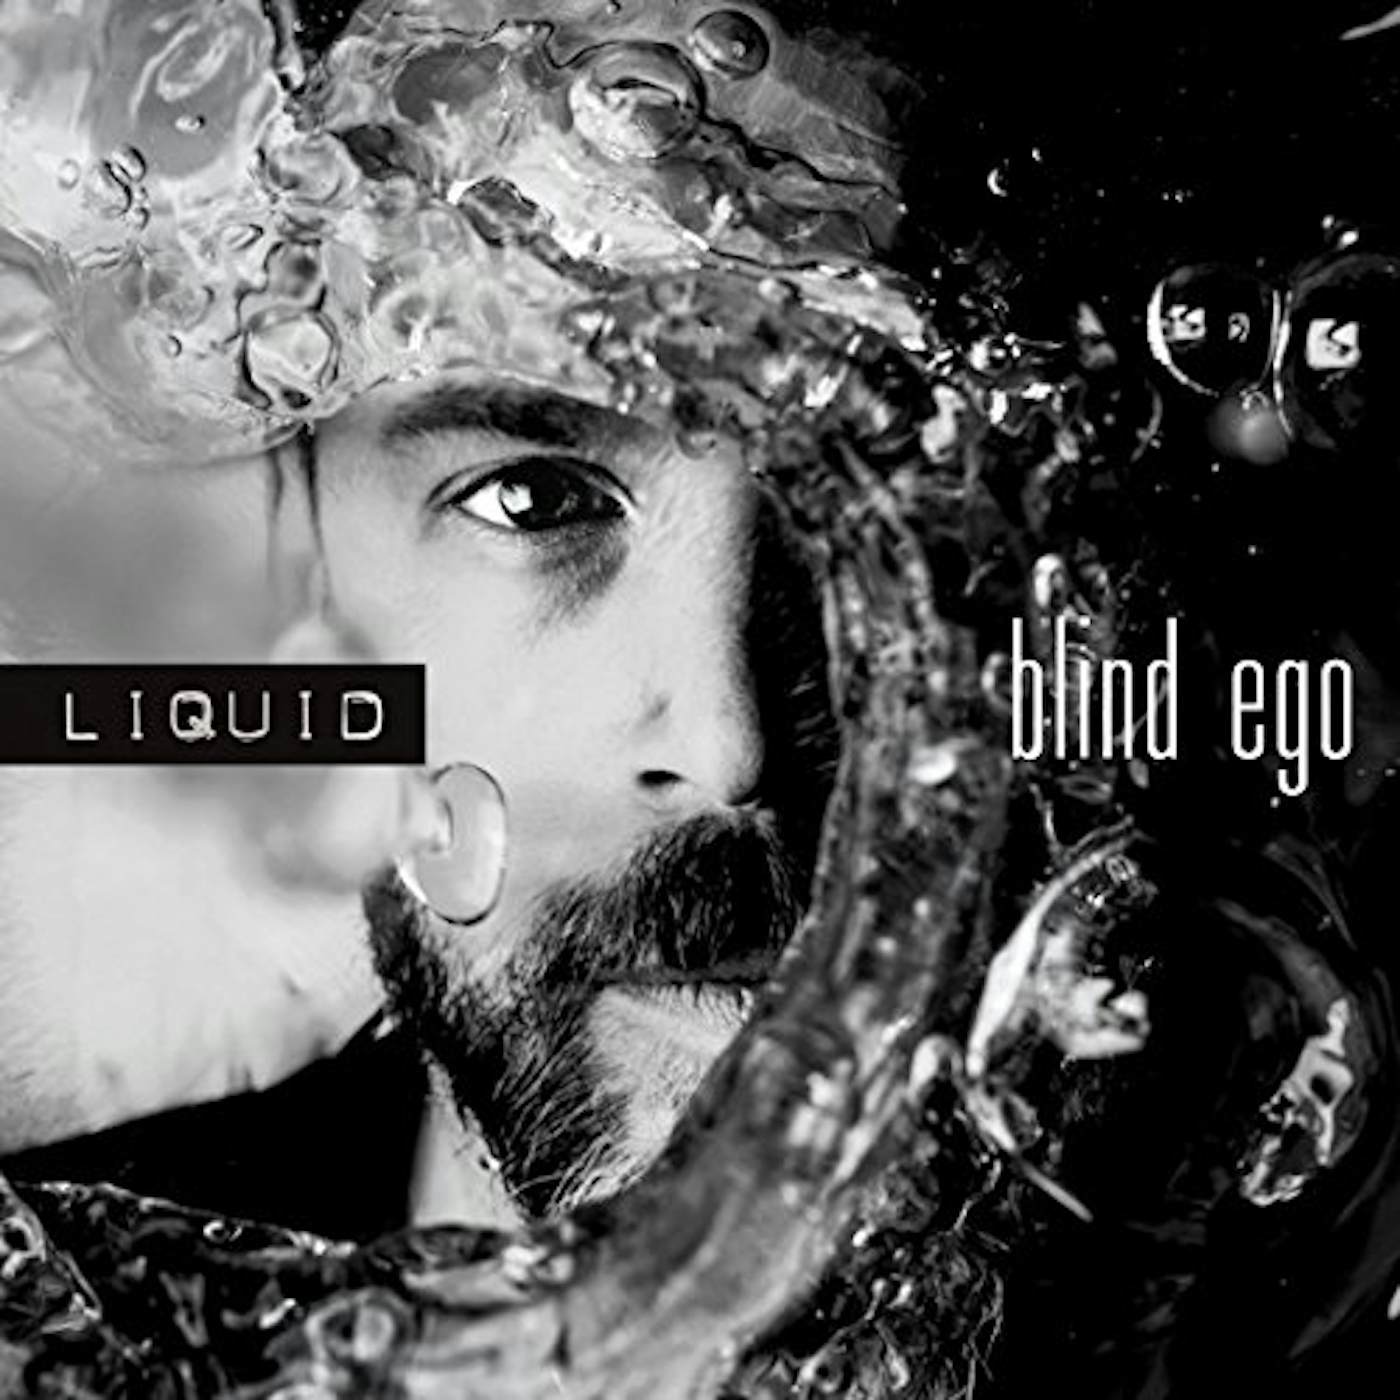 Blind Ego Liquid Vinyl Record